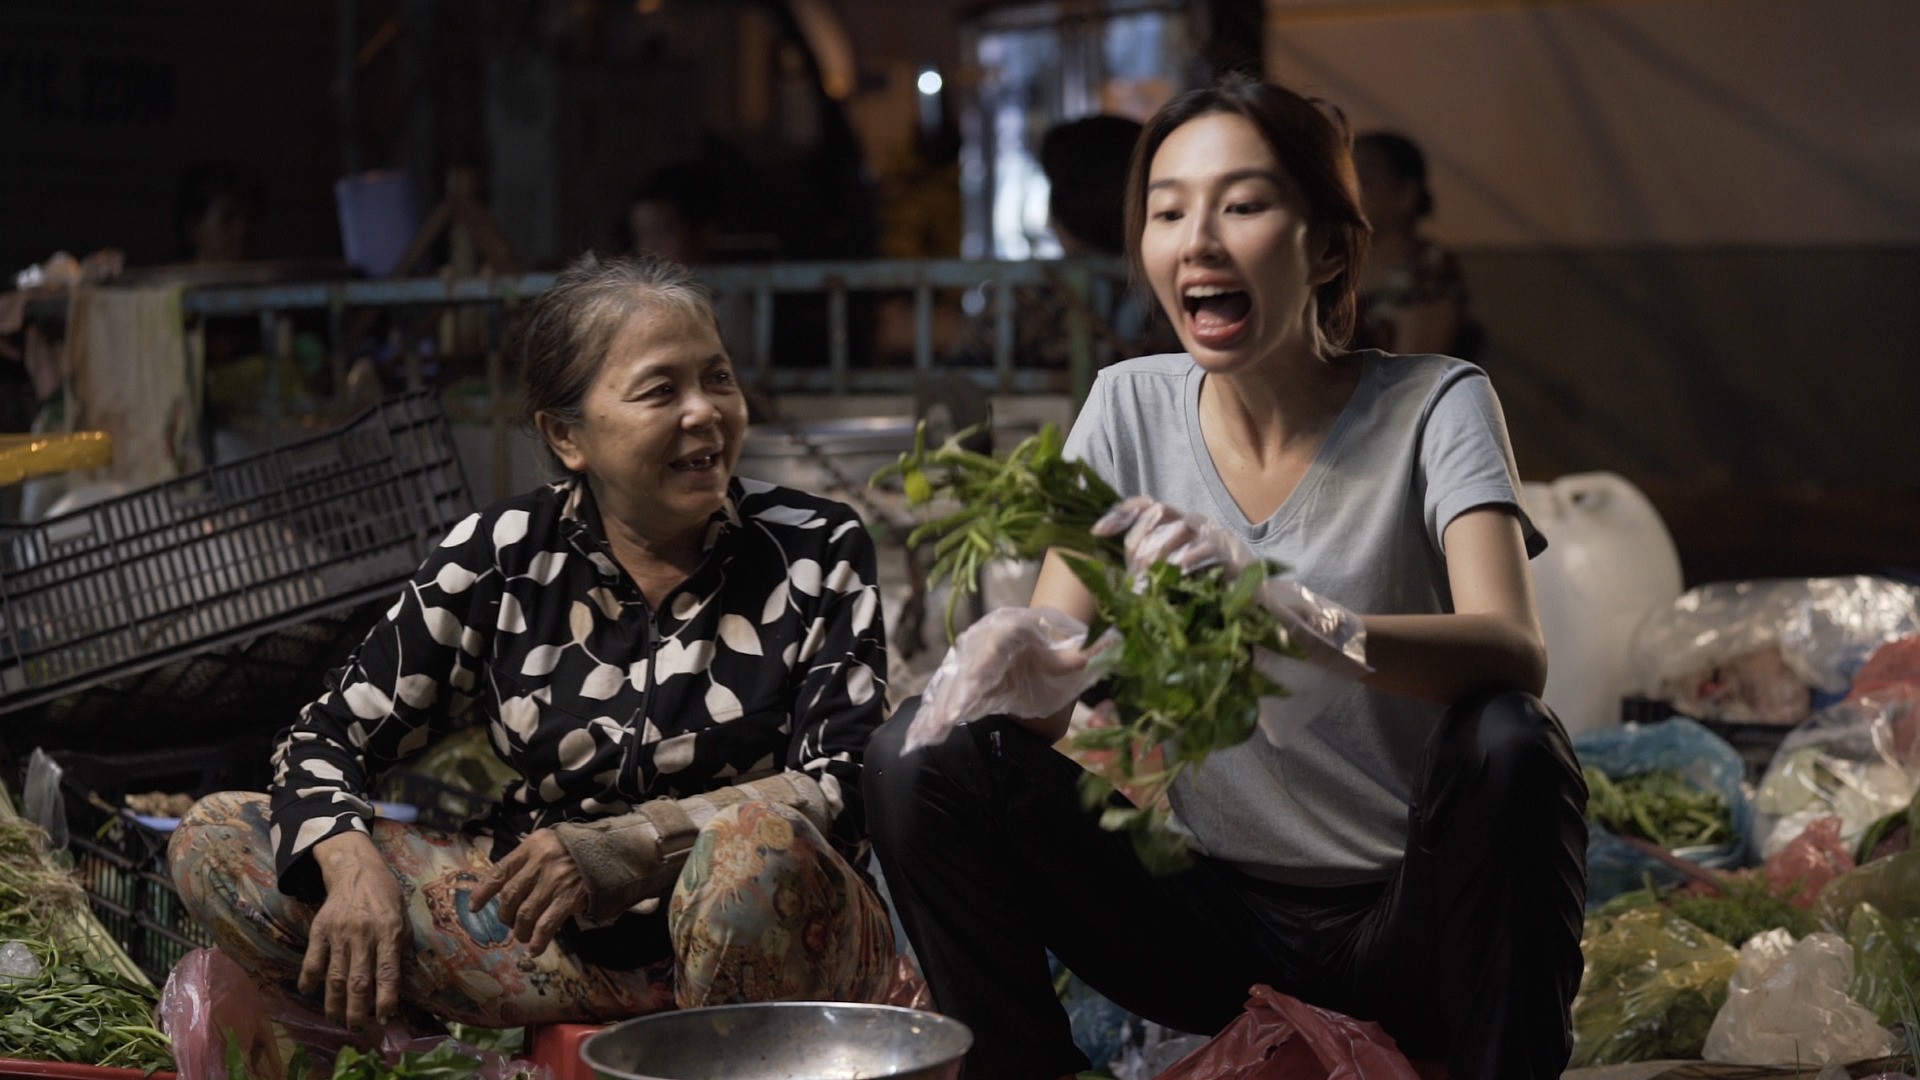 Hoa hậu Thuỳ Tiên bật khóc trong livestream khép lại series 'Đu đêm'